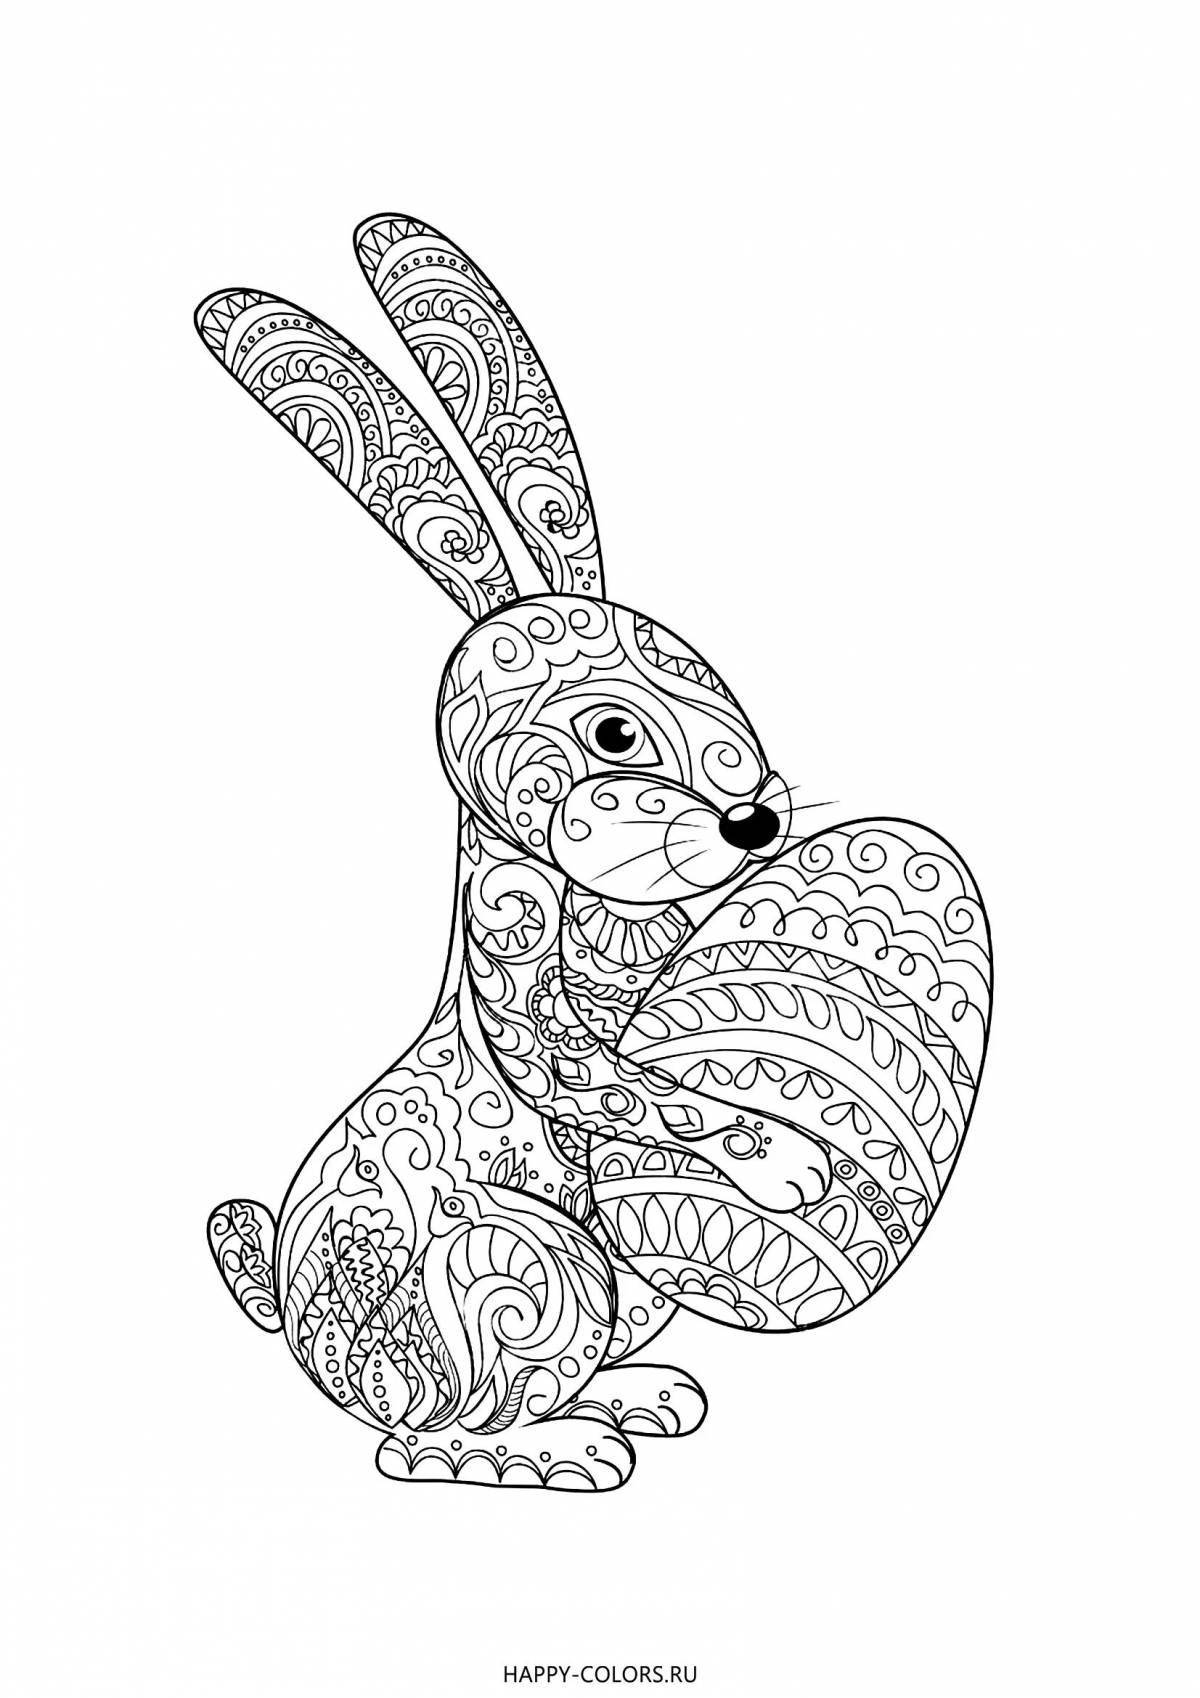 Яркая раскраска page bunny антистресс